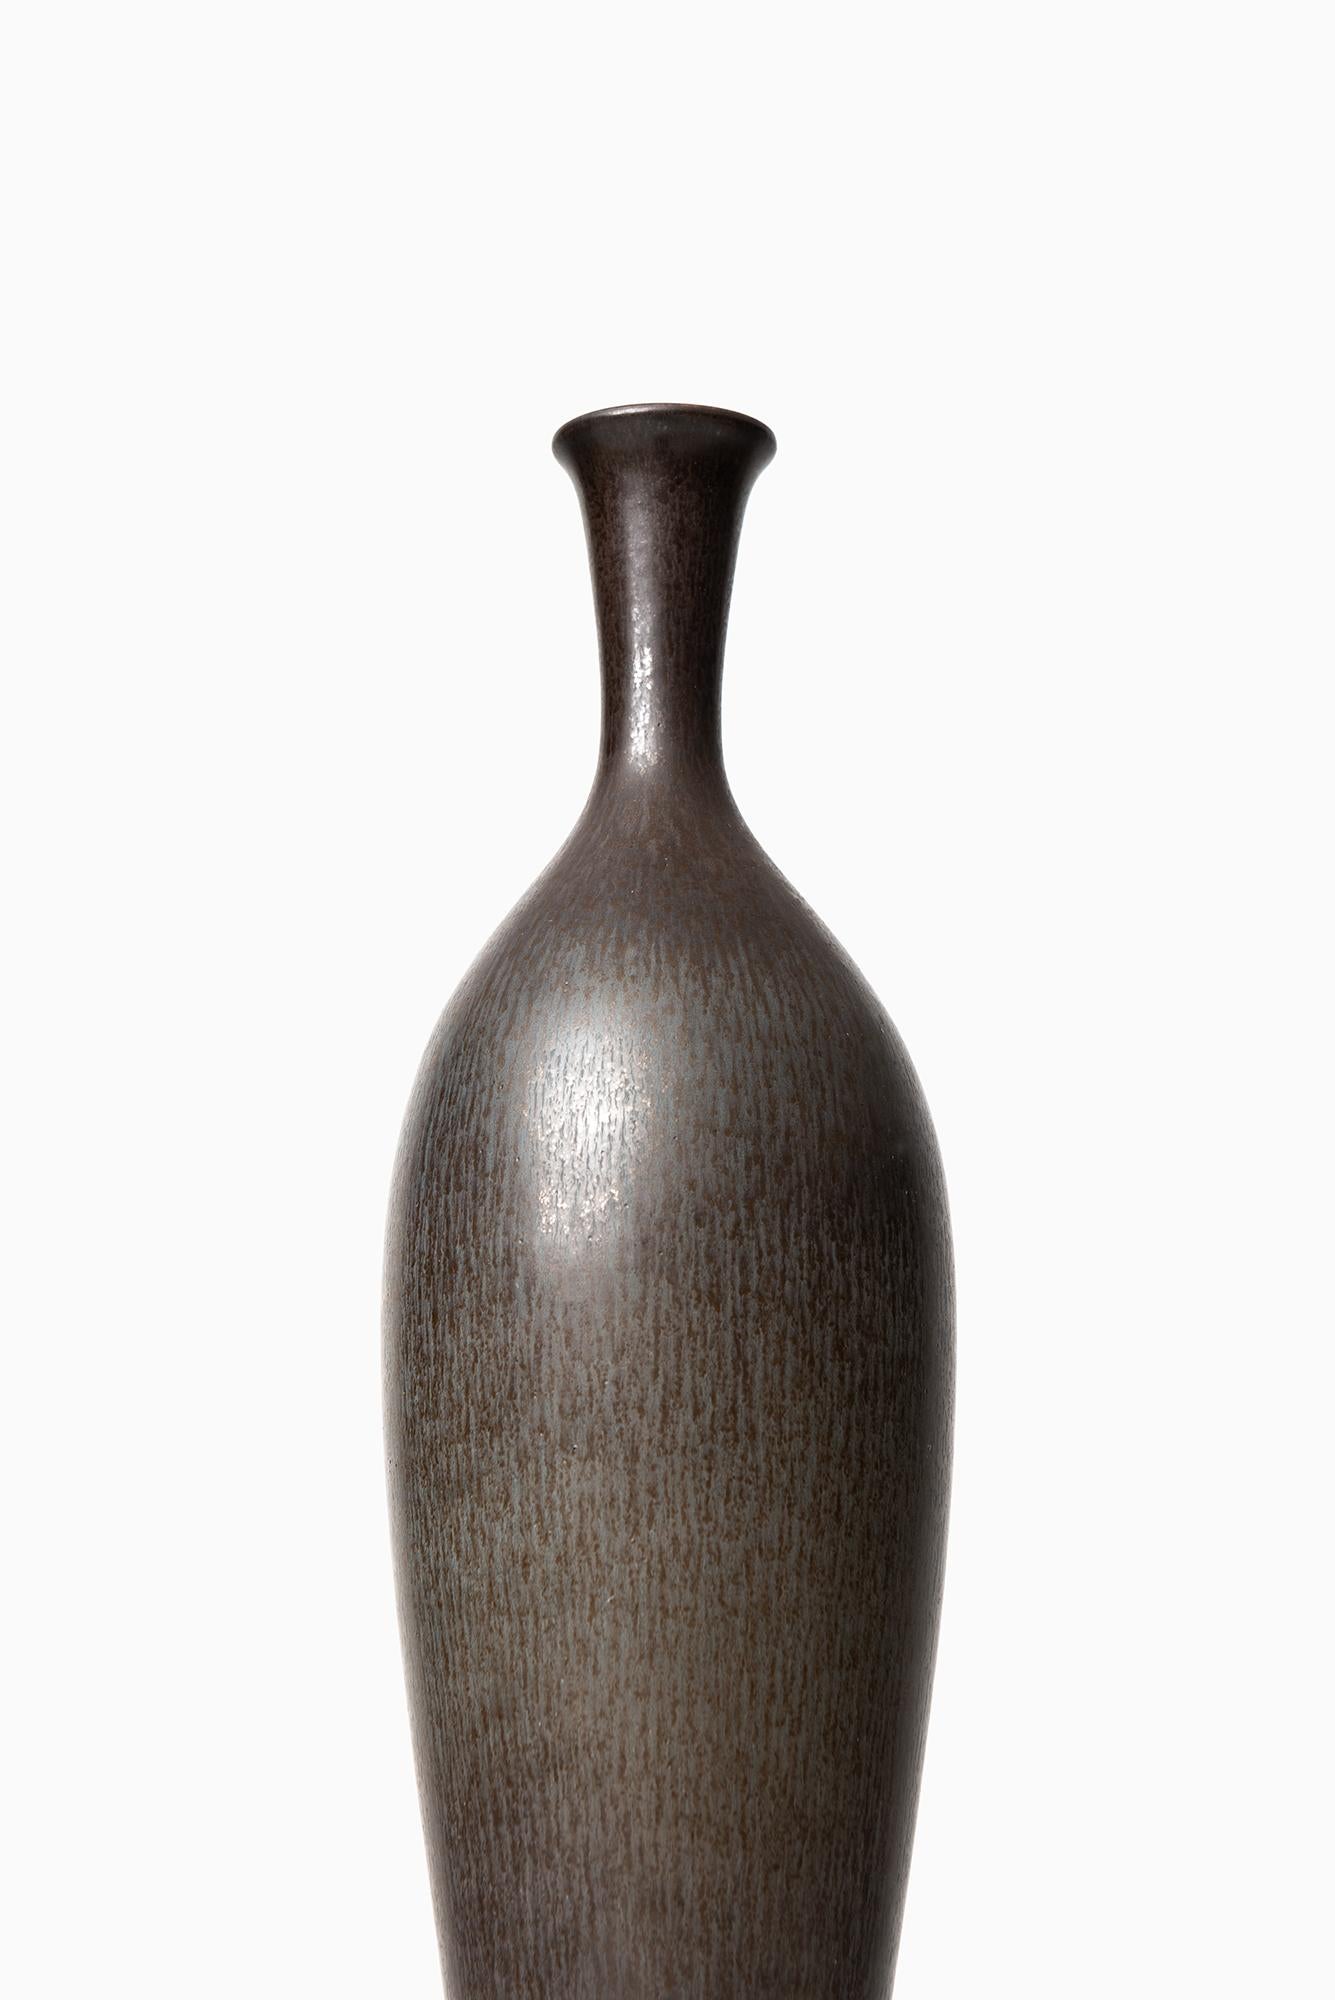 Rare large ceramic vase designed by Berndt Friberg. Produced by Gustavsberg in Sweden.